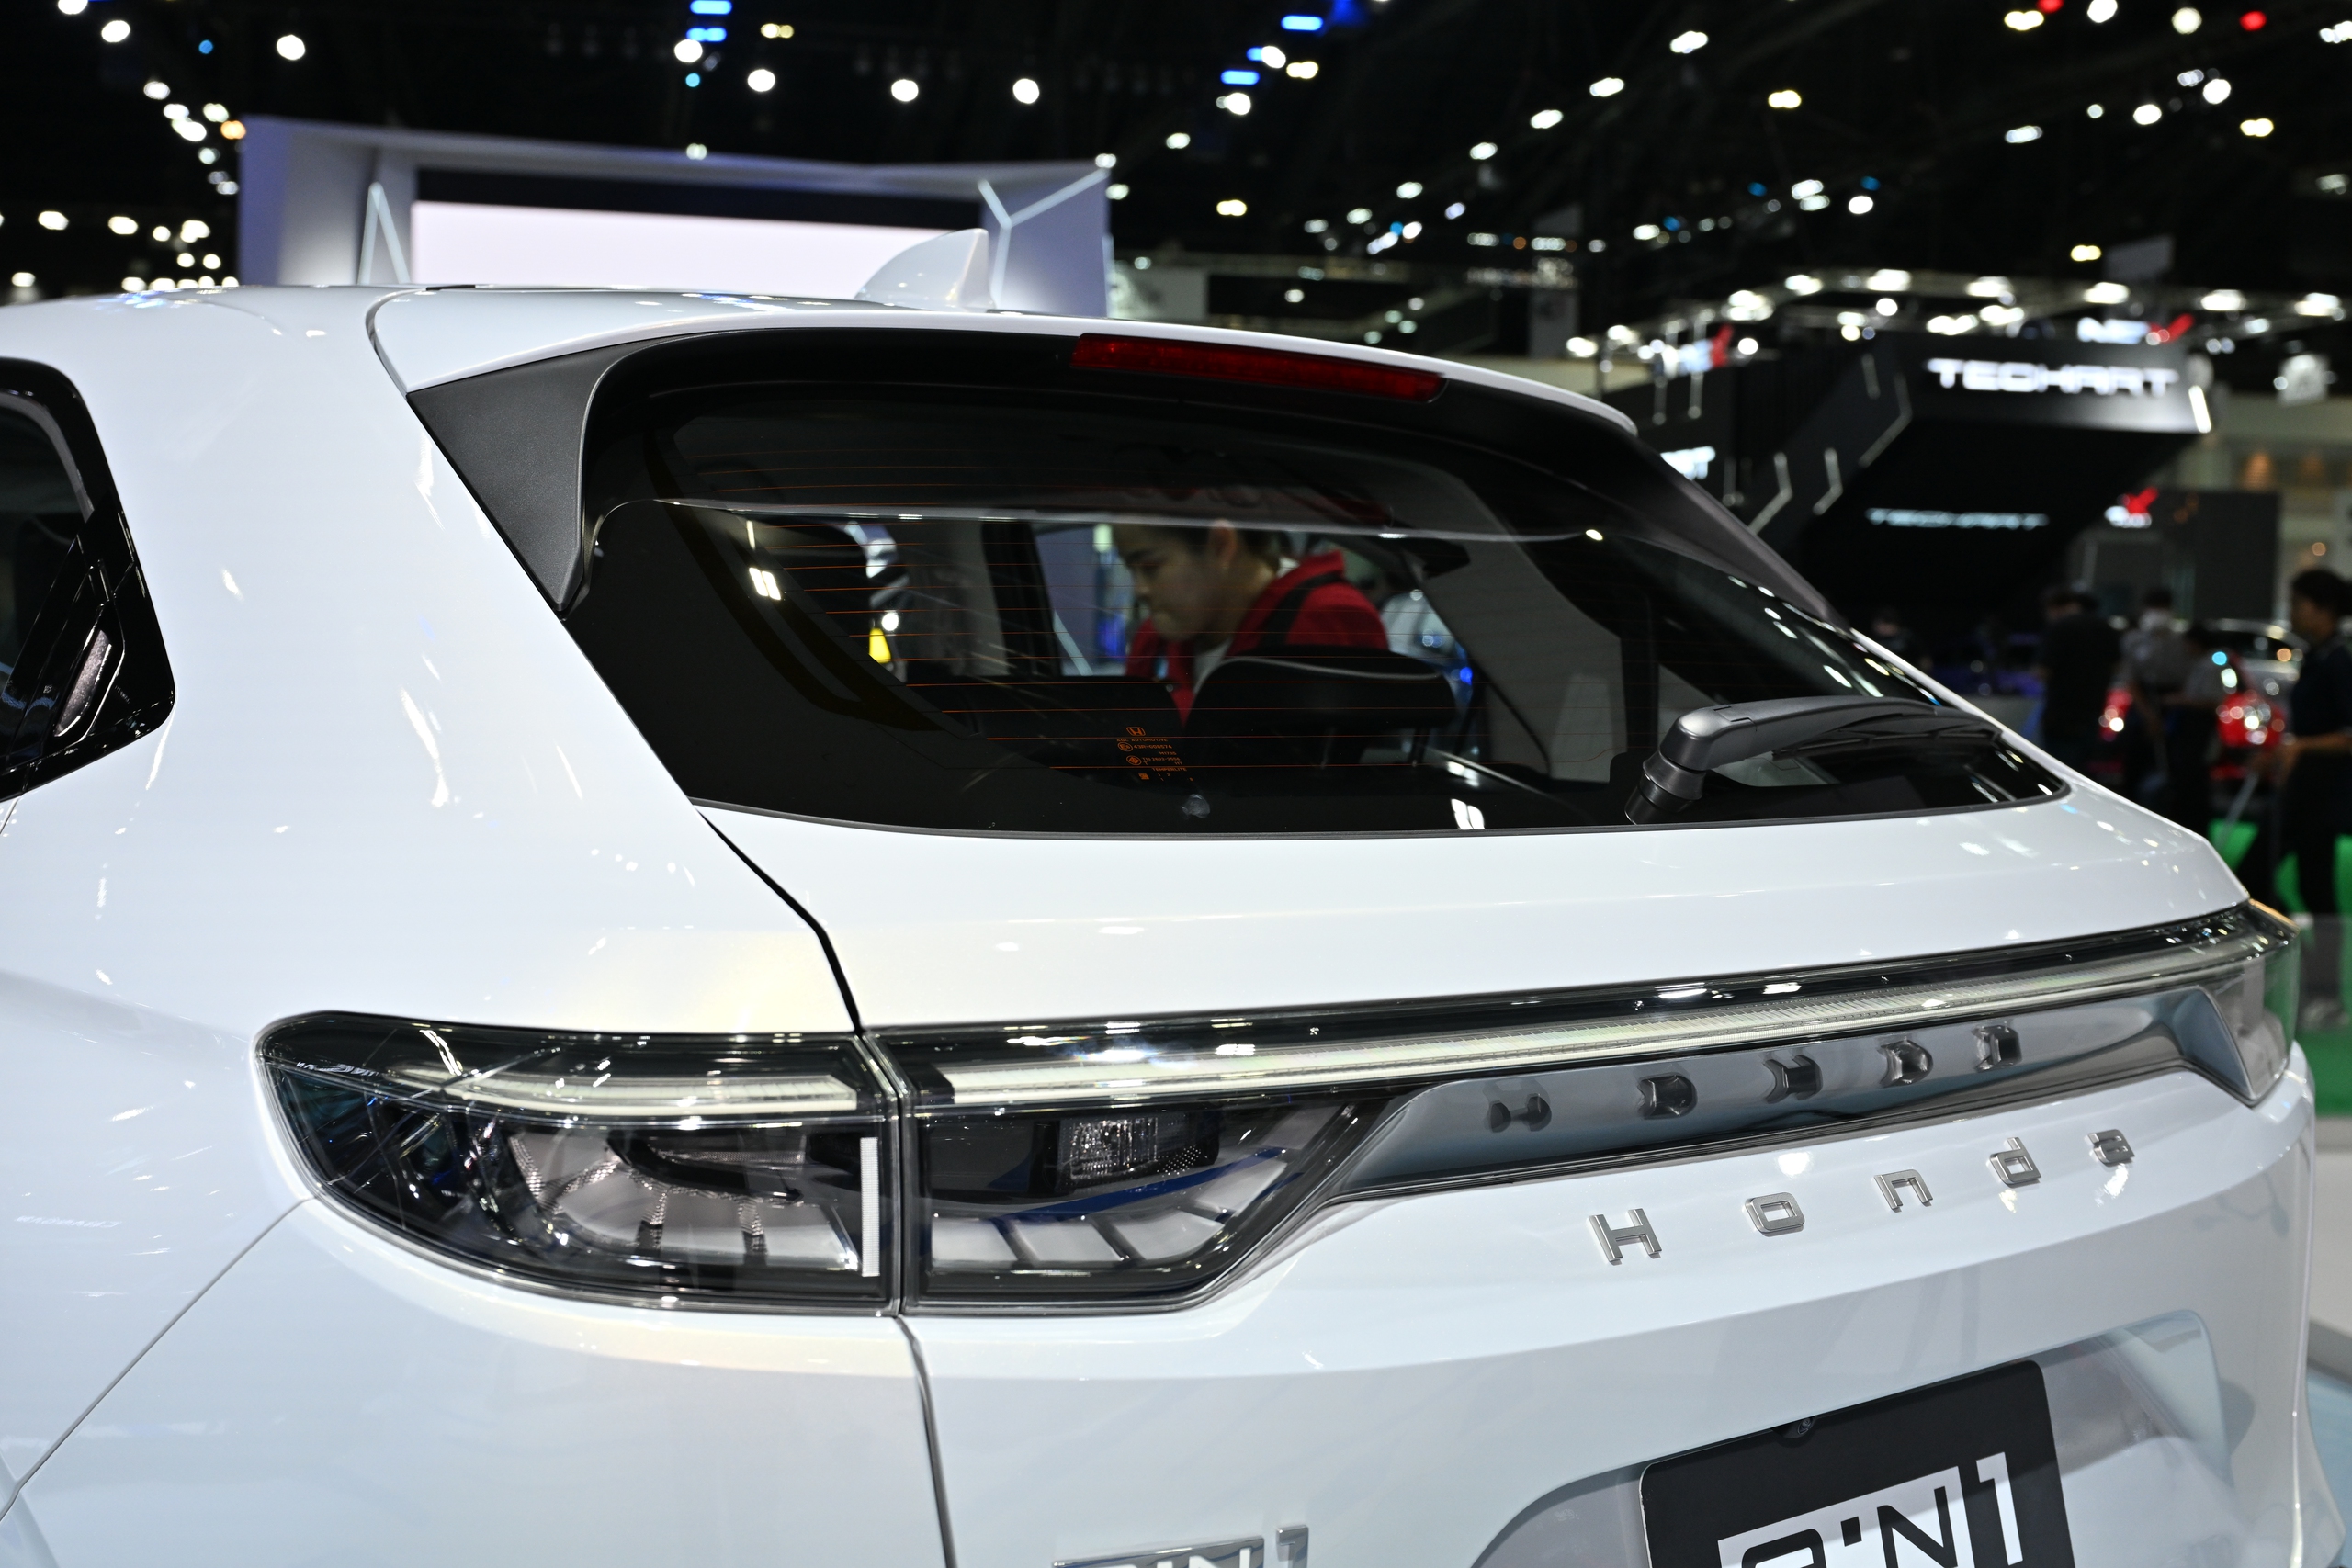 Chi tiết Honda HR-V thuần điện: Nhiều tiện nghi, một lần sạc đi được 500km, đi Hà Nội - Hạ Long rồi về vẫn thừa - ảnh 7